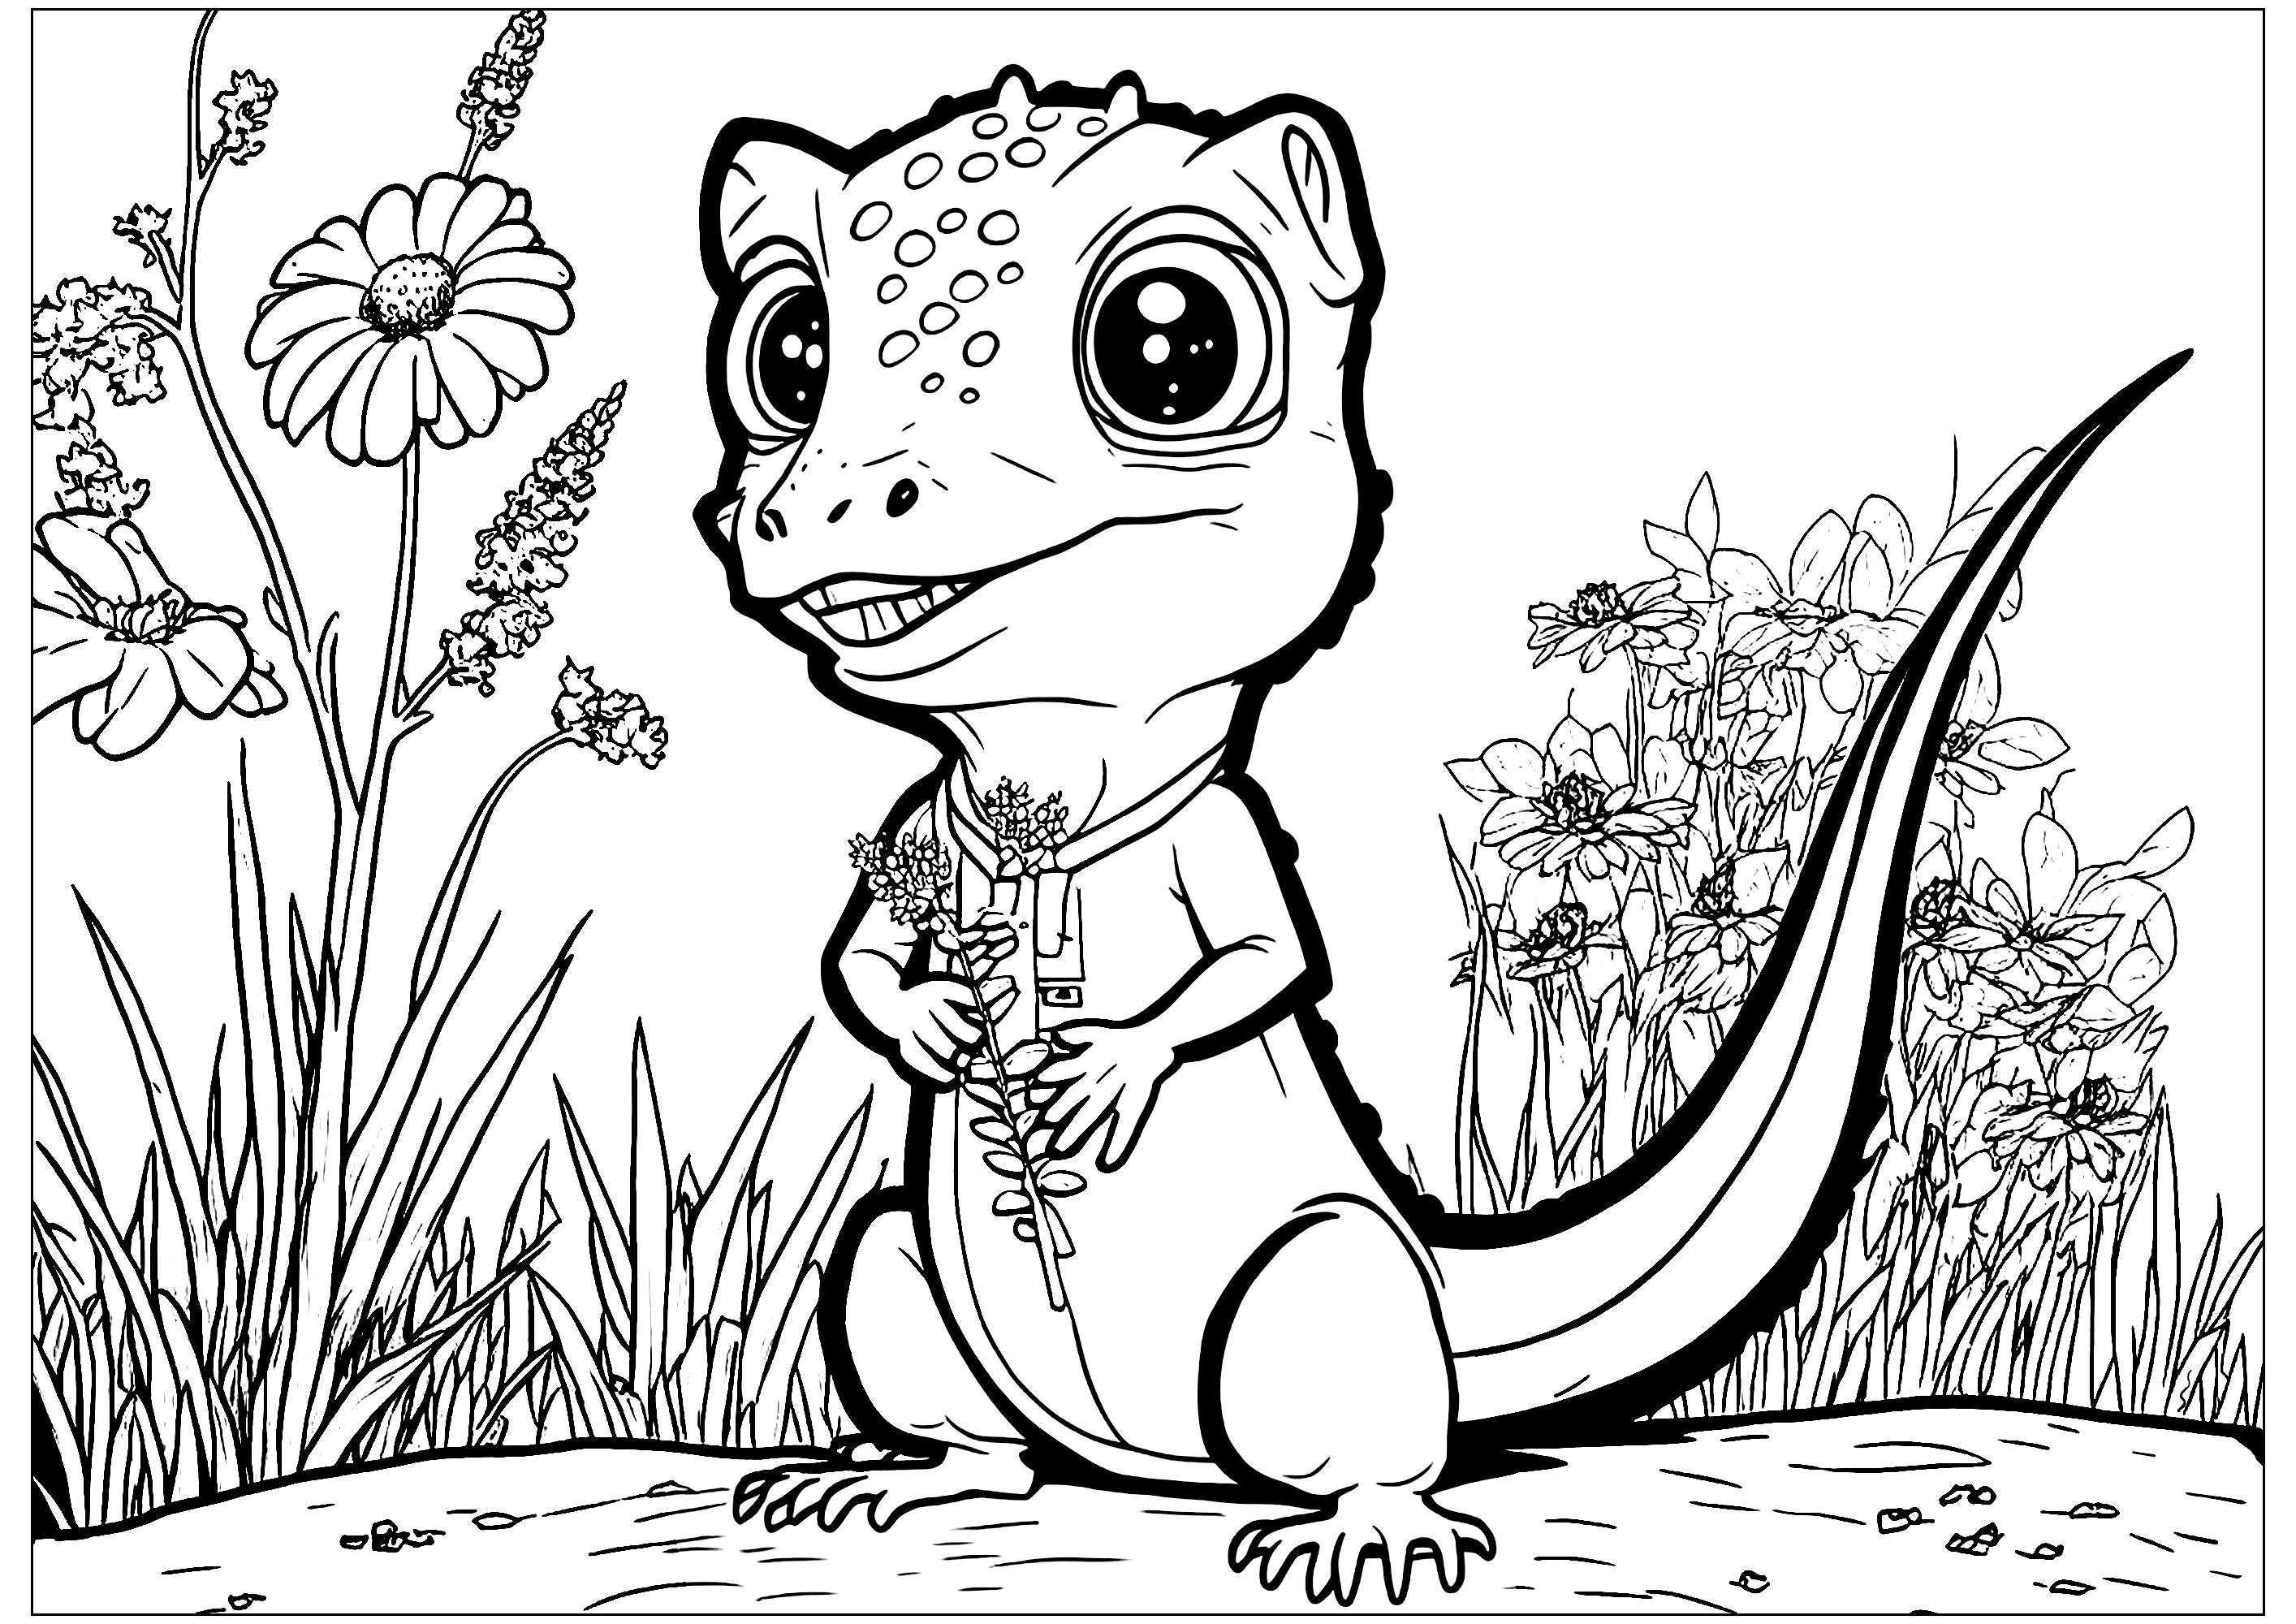 Coloração de um pequeno lagarto em estilo cartoon